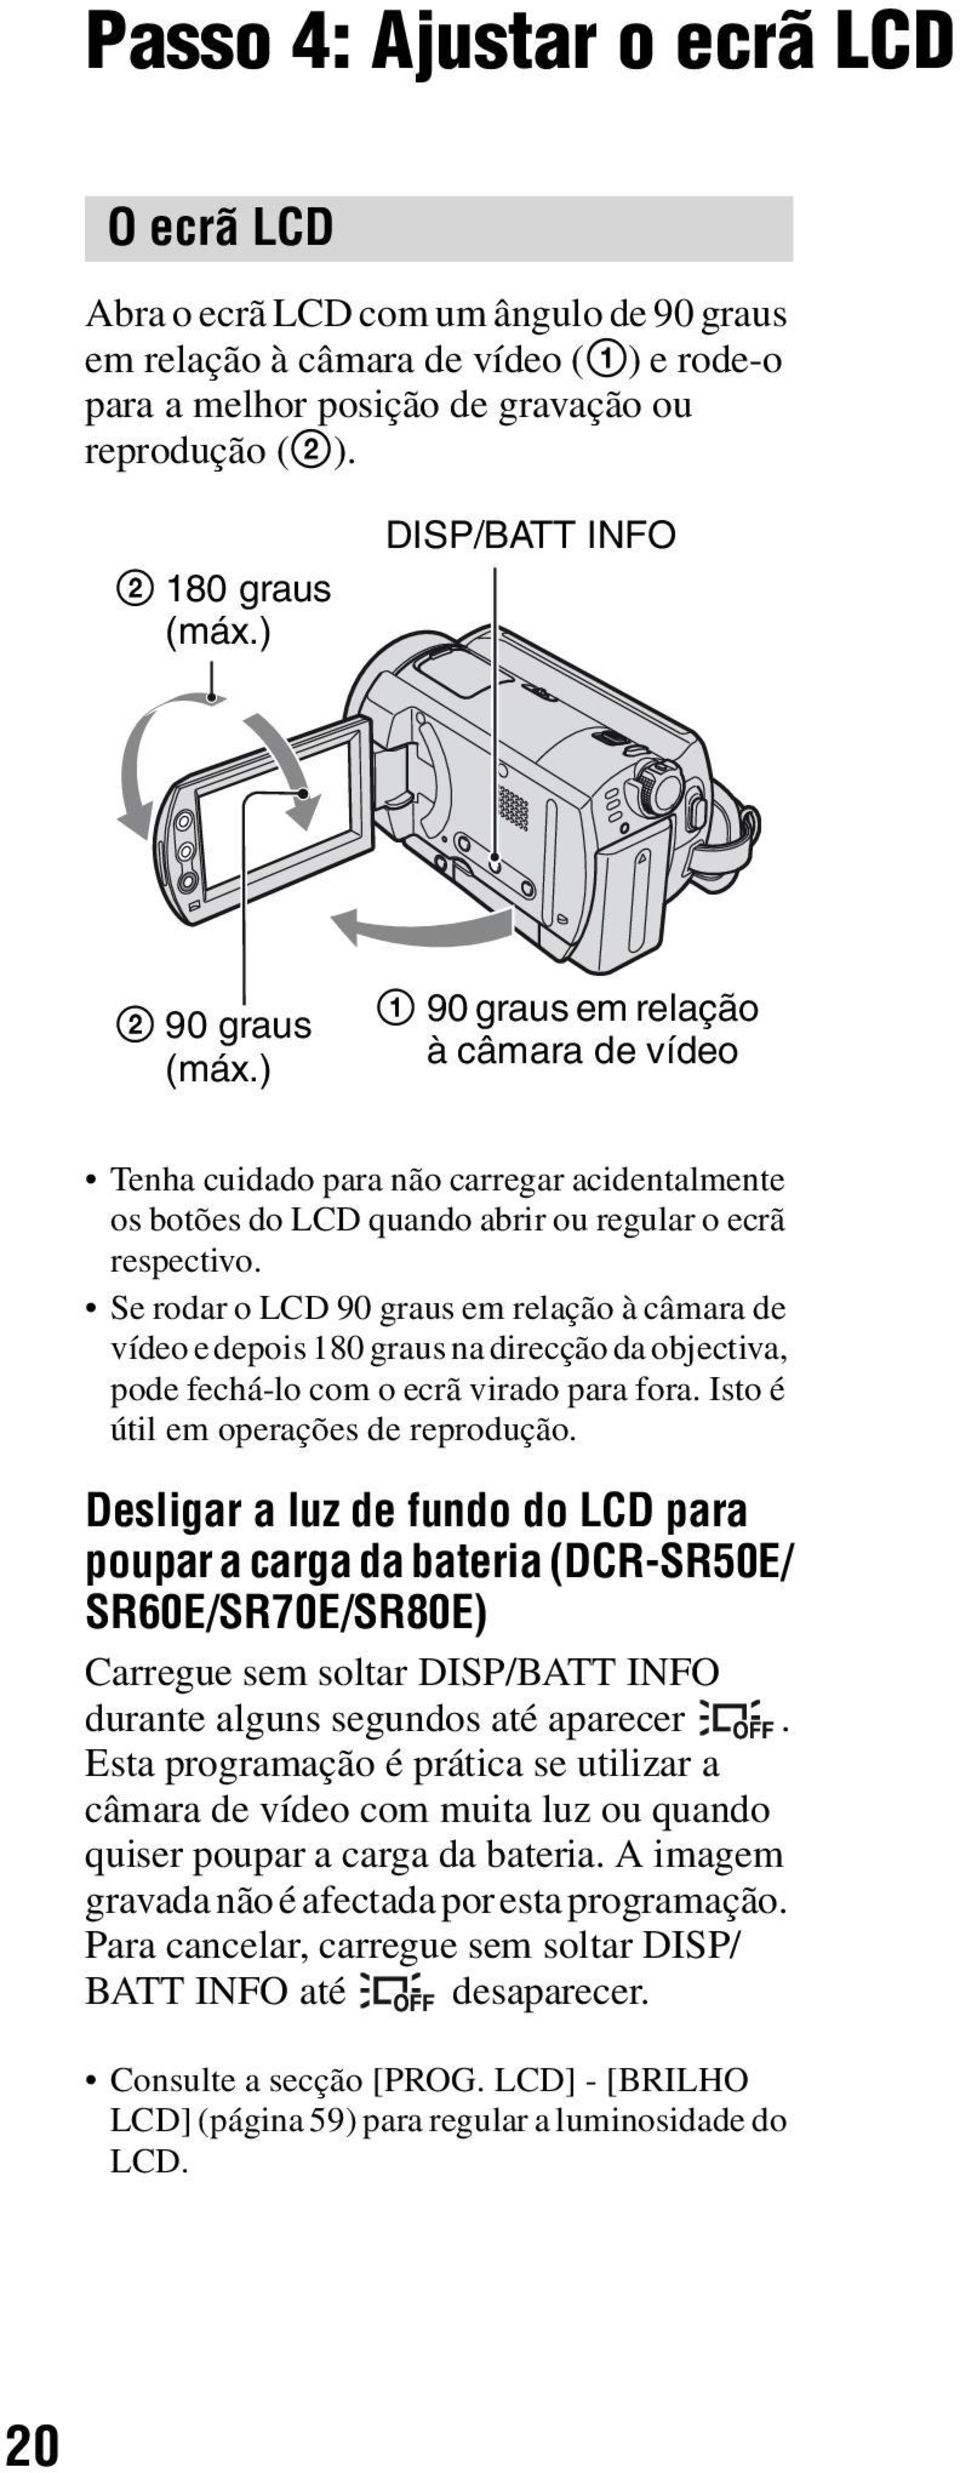 Se rodar o LCD 90 graus em relação à câmara de vídeo e depois 180 graus na direcção da objectiva, pode fechá-lo com o ecrã virado para fora. Isto é útil em operações de reprodução.